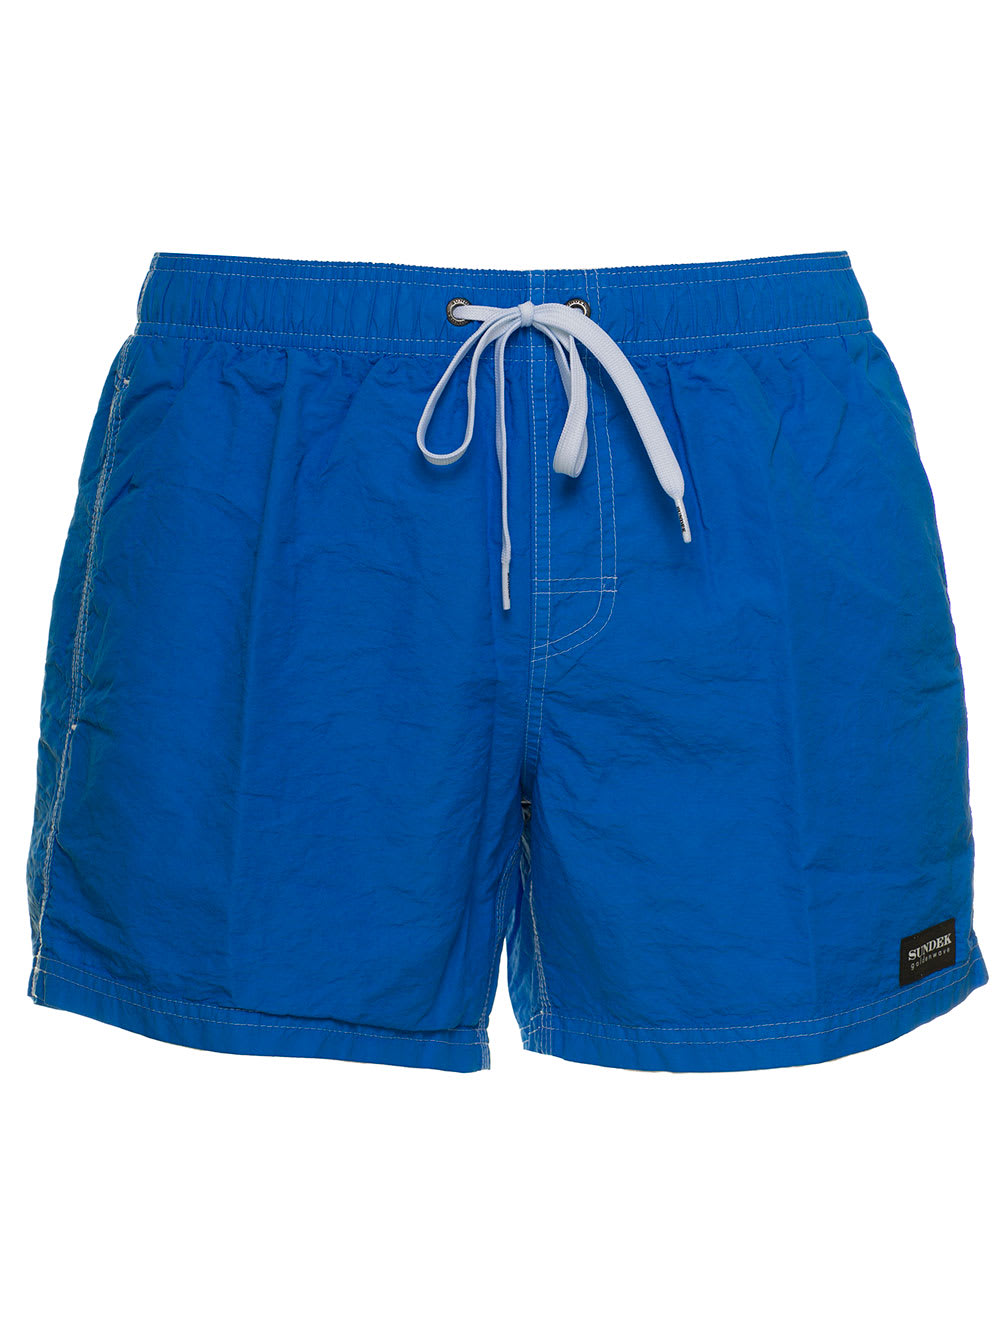 Sundek Mens Blue Nylon Beach Shorts